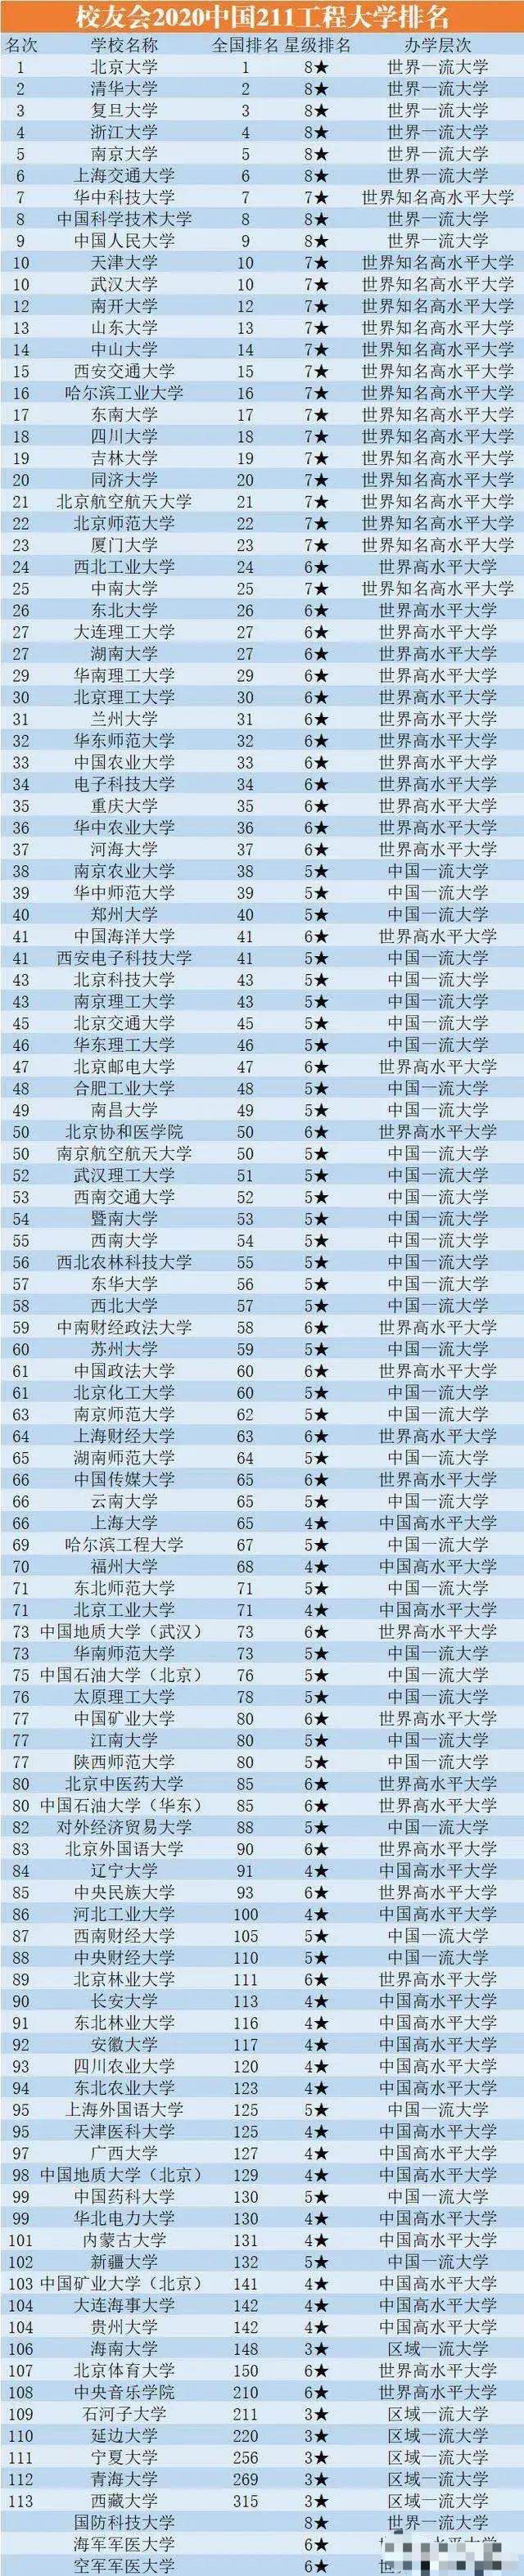 211大学排名复旦第三上海大学高于哈工大西藏大学垫底